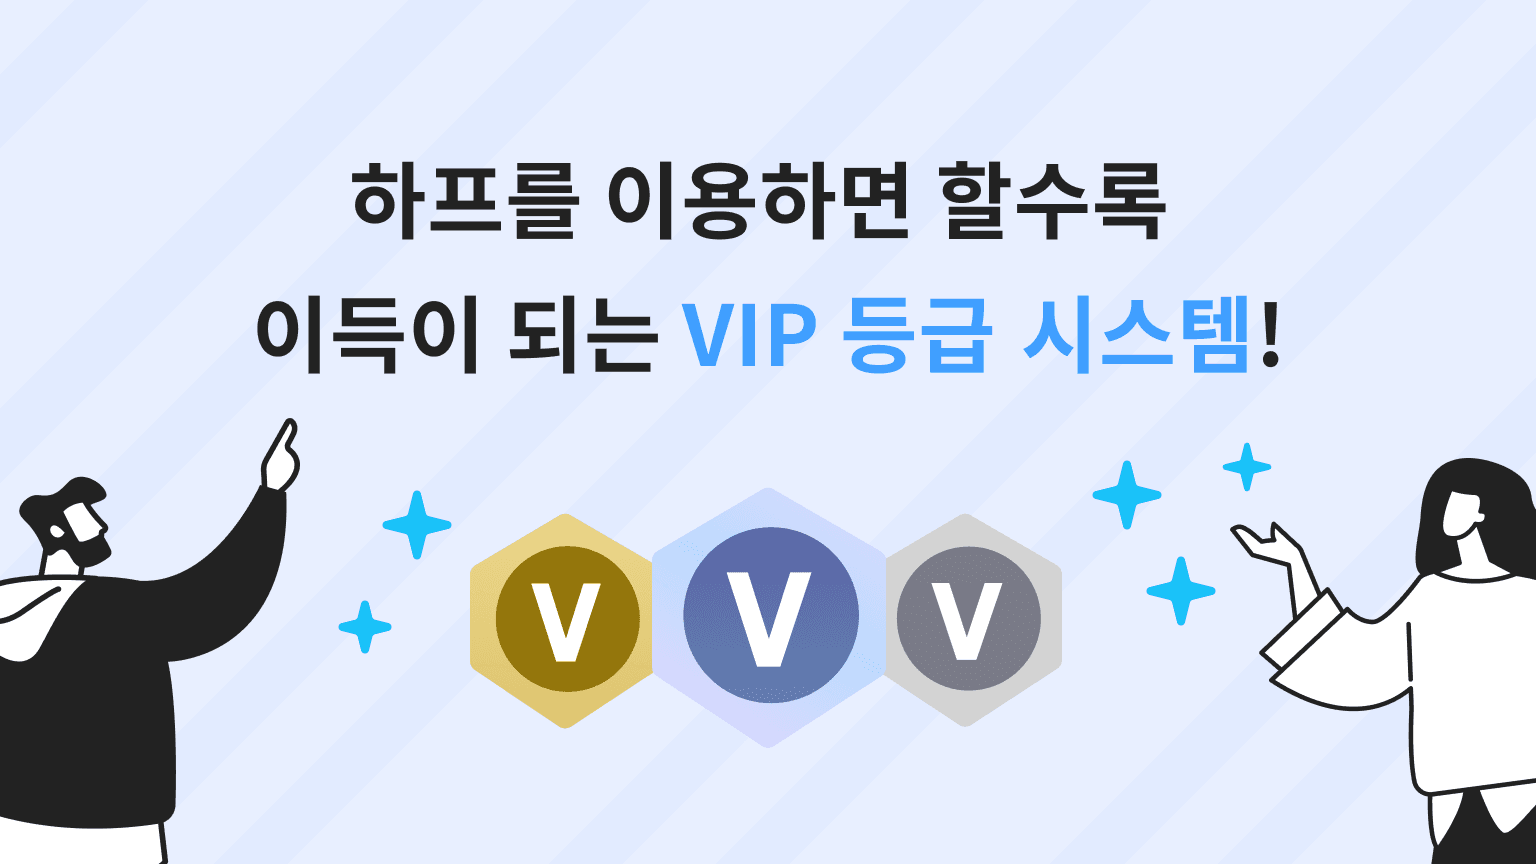 【7/18부터】 하프를 구독하면 할수록 이득이 되는 VIP 등급 시스템!